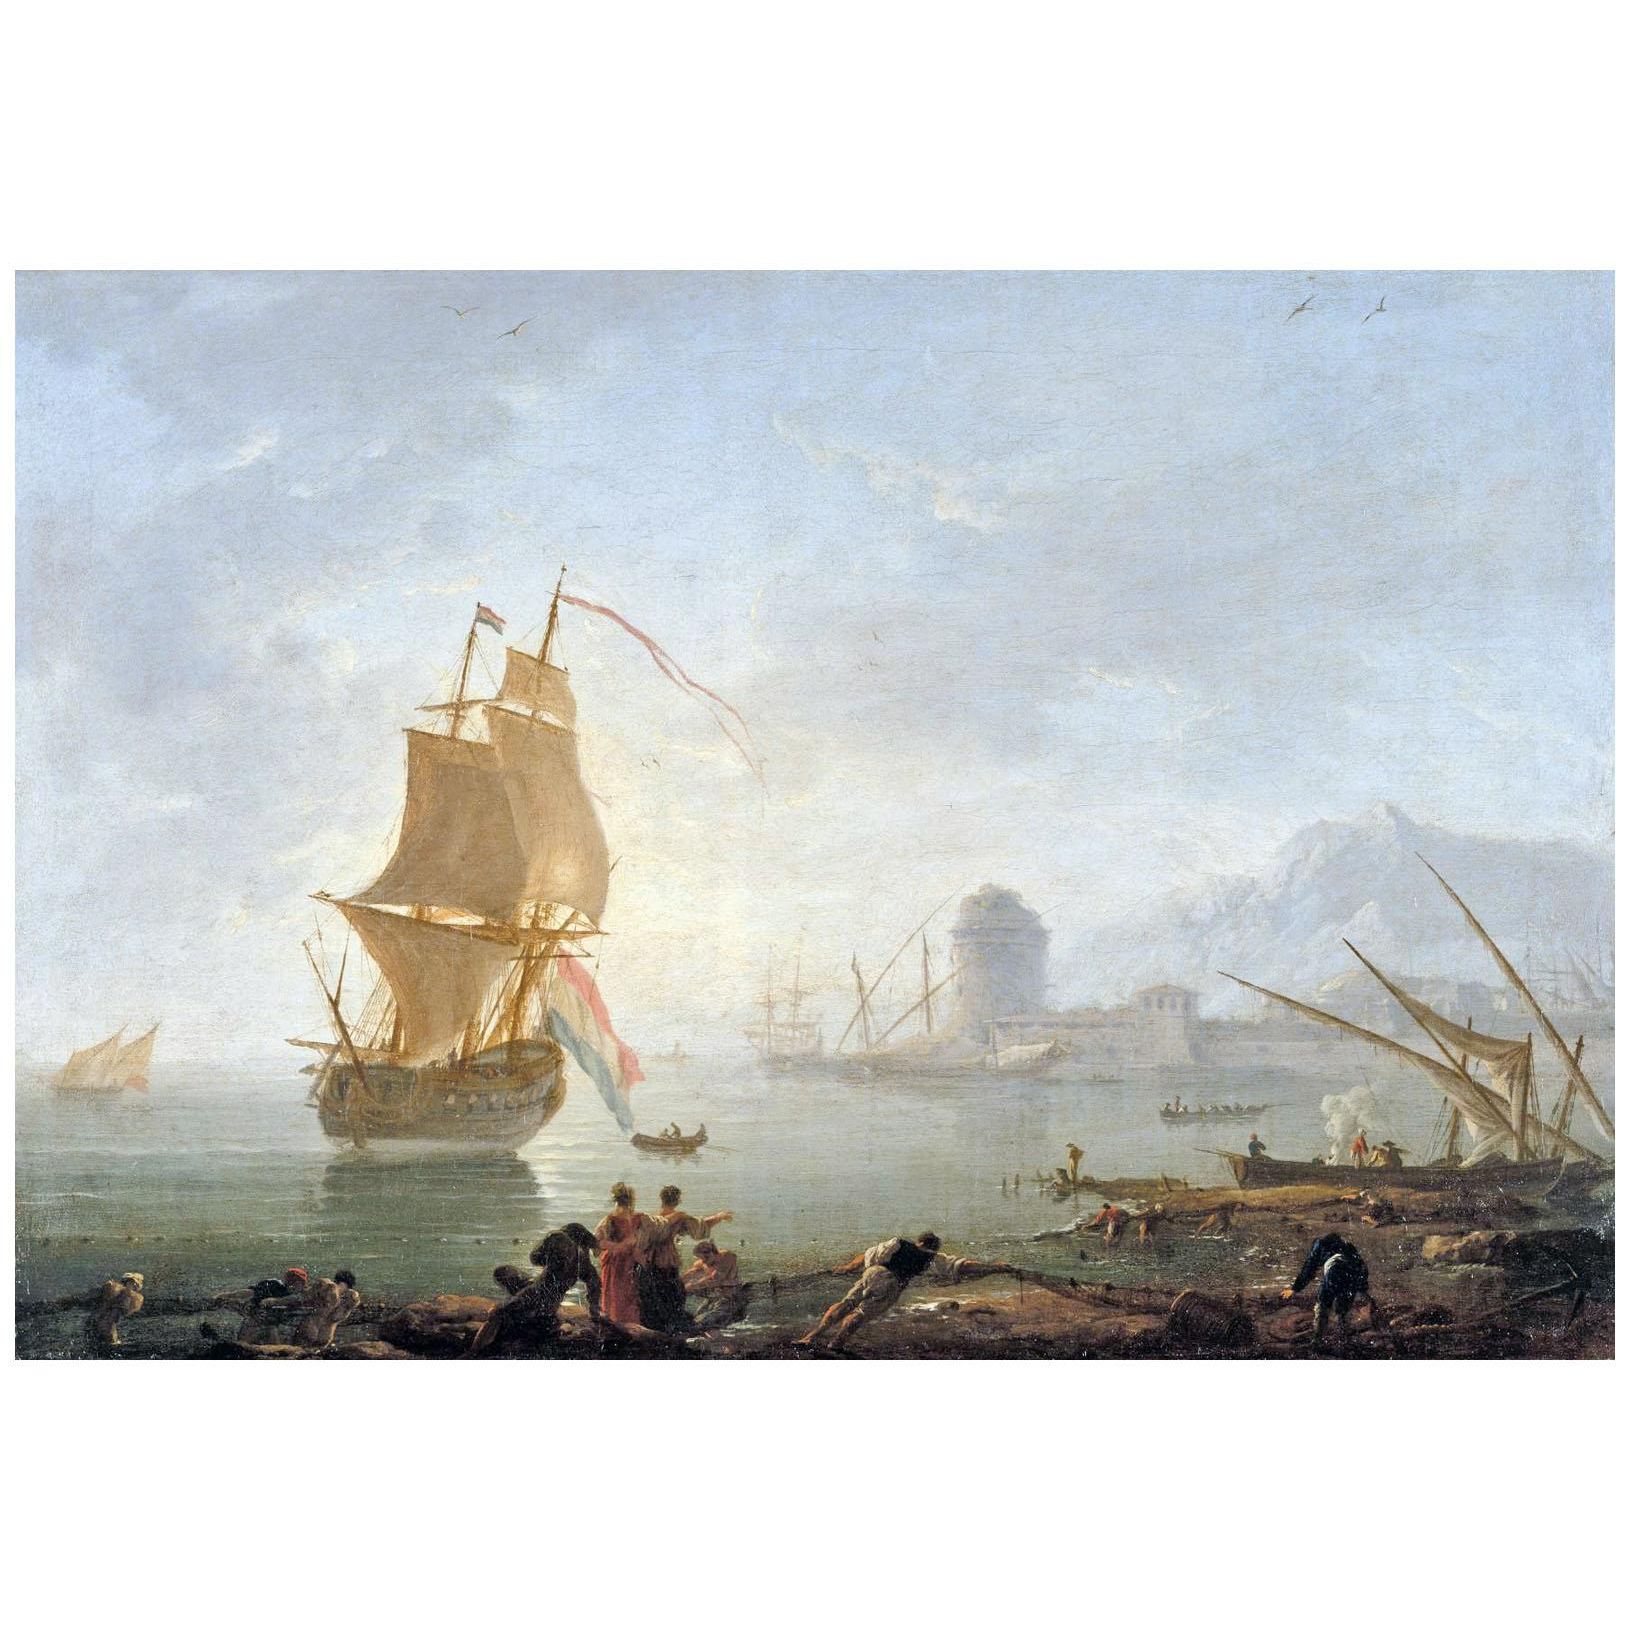 Joseph Vernet. Le midi, pêcheurs tirant un filet. 1781. НГХМ, Nizhny Novgorod